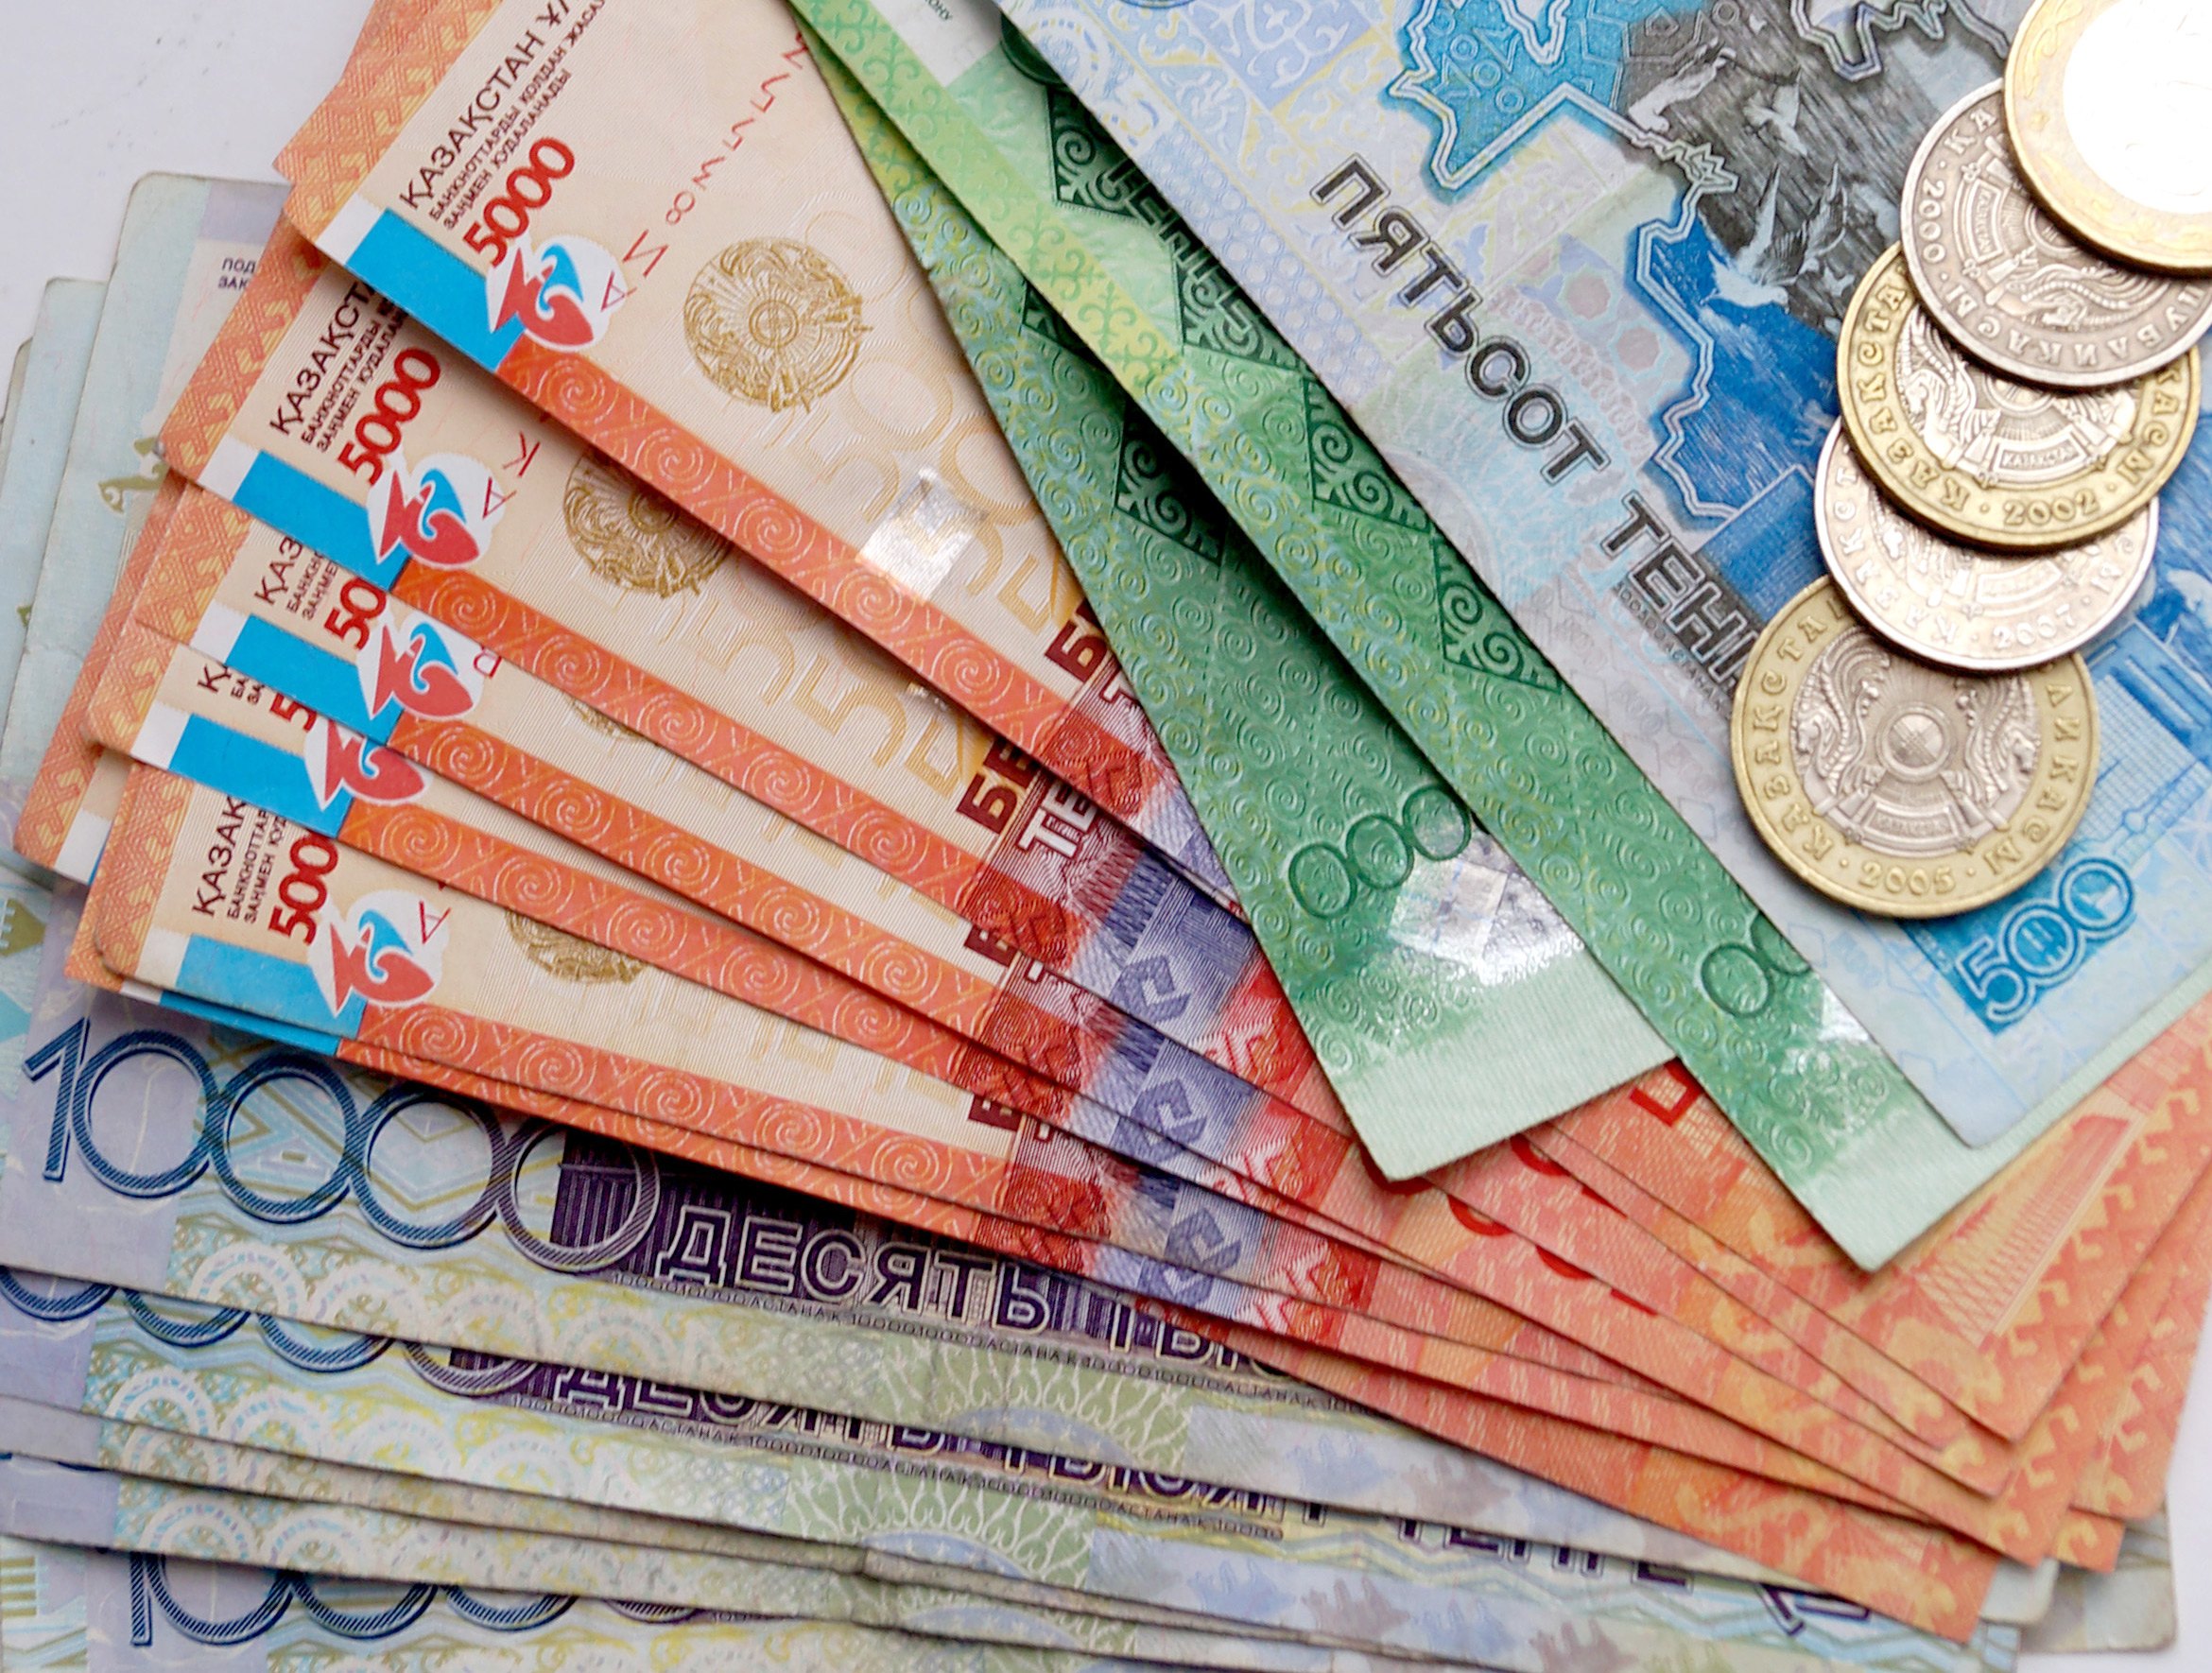 Евразийский банк выплатит компенсацию по вкладам Банка Астаны